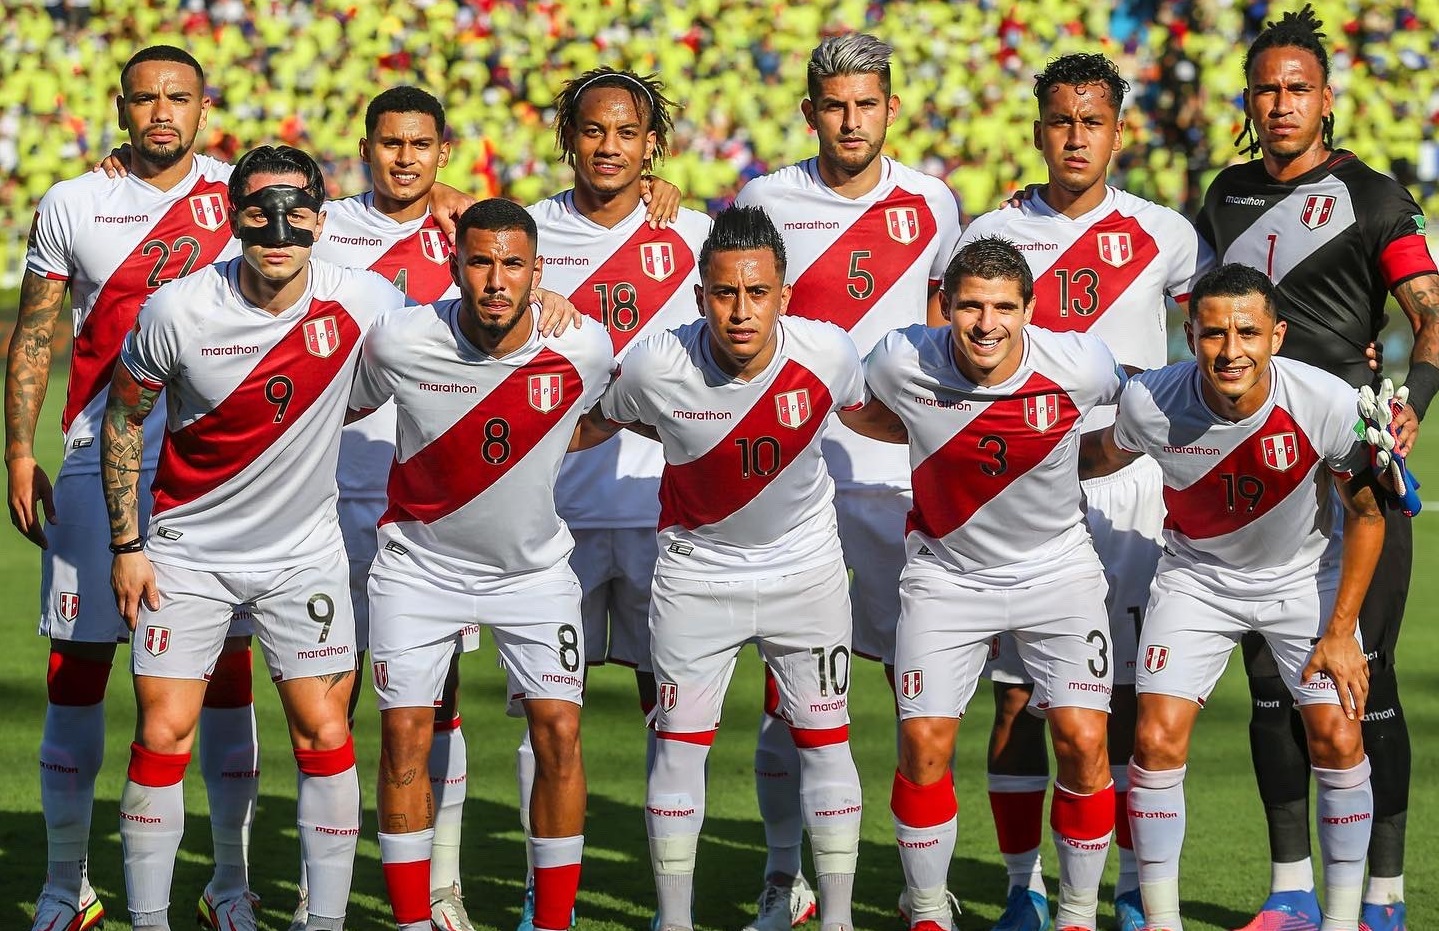 Jugadores de selección de fútbol del perú